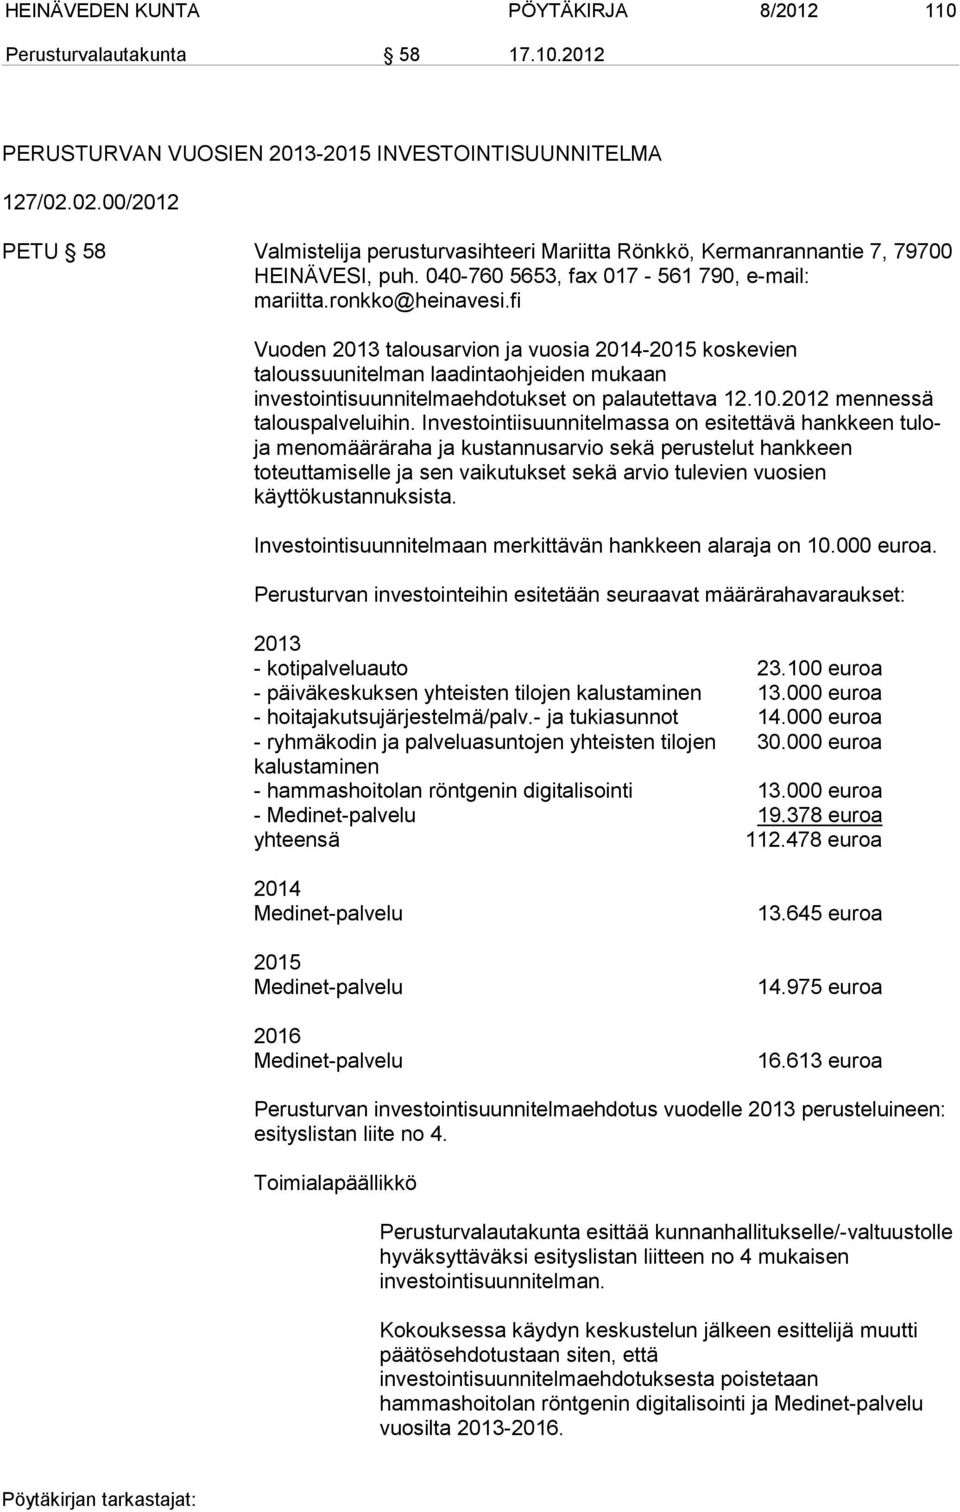 fi Vuoden 2013 talousarvion ja vuosia 2014-2015 koskevien taloussuunitelman laadintaohjeiden mukaan investointisuunnitelmaehdotukset on palautettava 12.10.2012 mennessä talouspalveluihin.